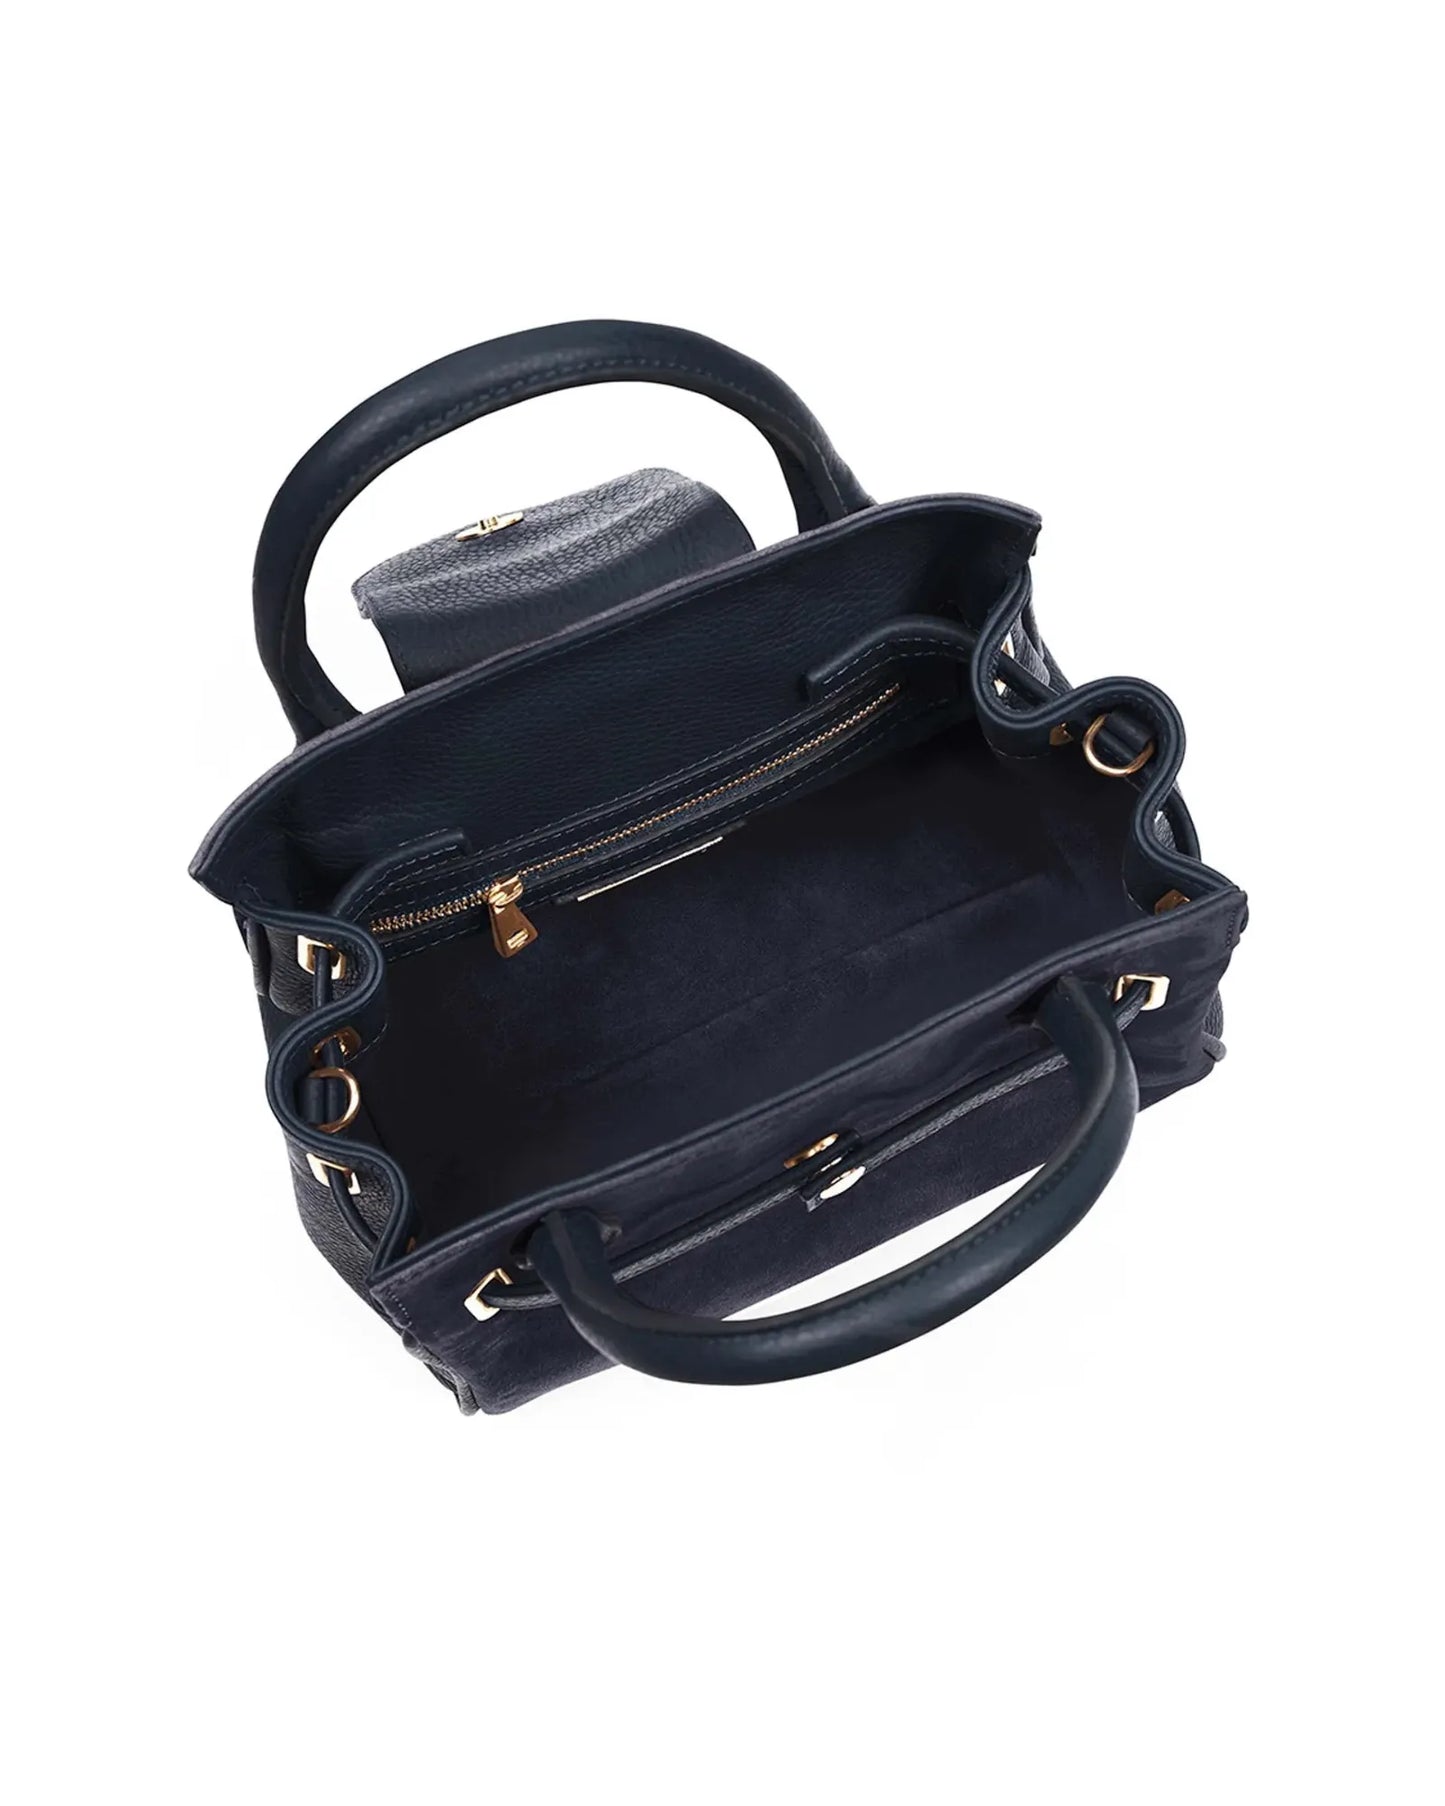 The Mini Windsor Handbag in Navy Suede